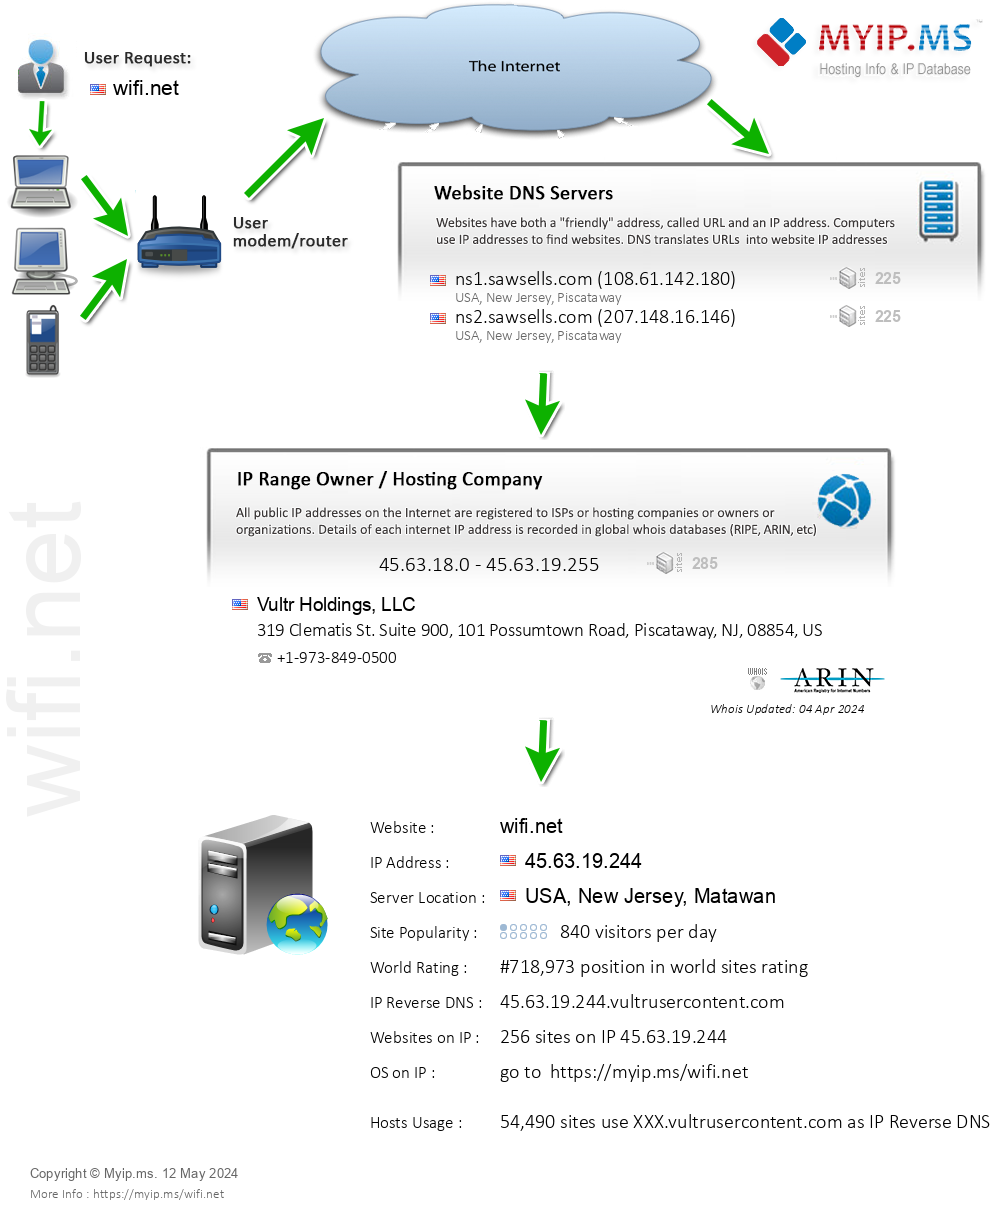 Wifi.net - Website Hosting Visual IP Diagram